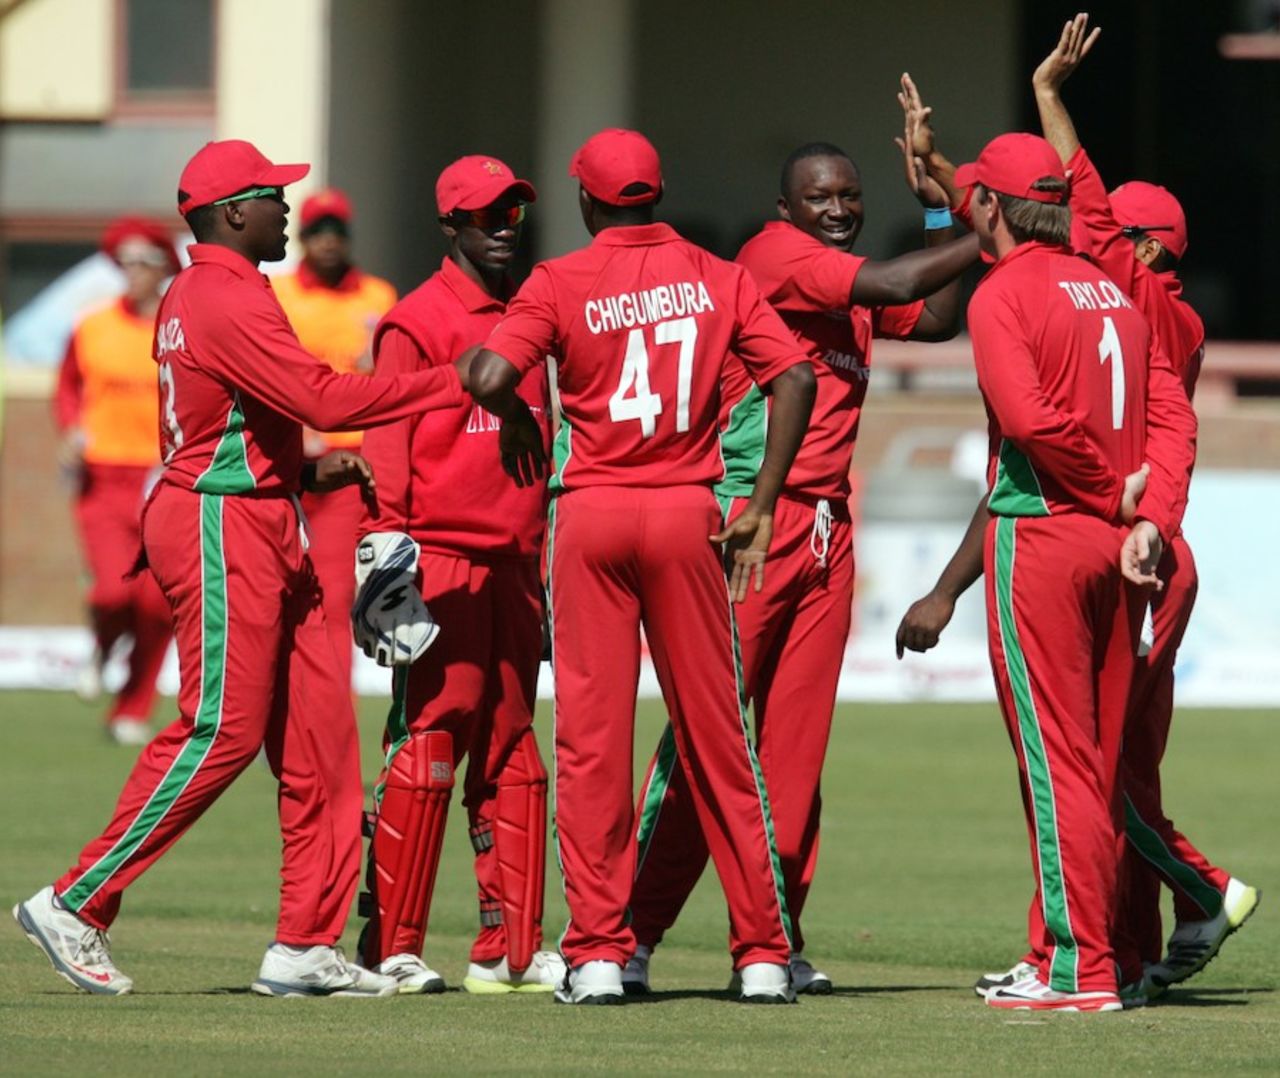 John Nyumbu is congratulated after picking a wicket, Zimbabwe v South Africa, 2nd ODI, Bulawayo, August 19, 2014